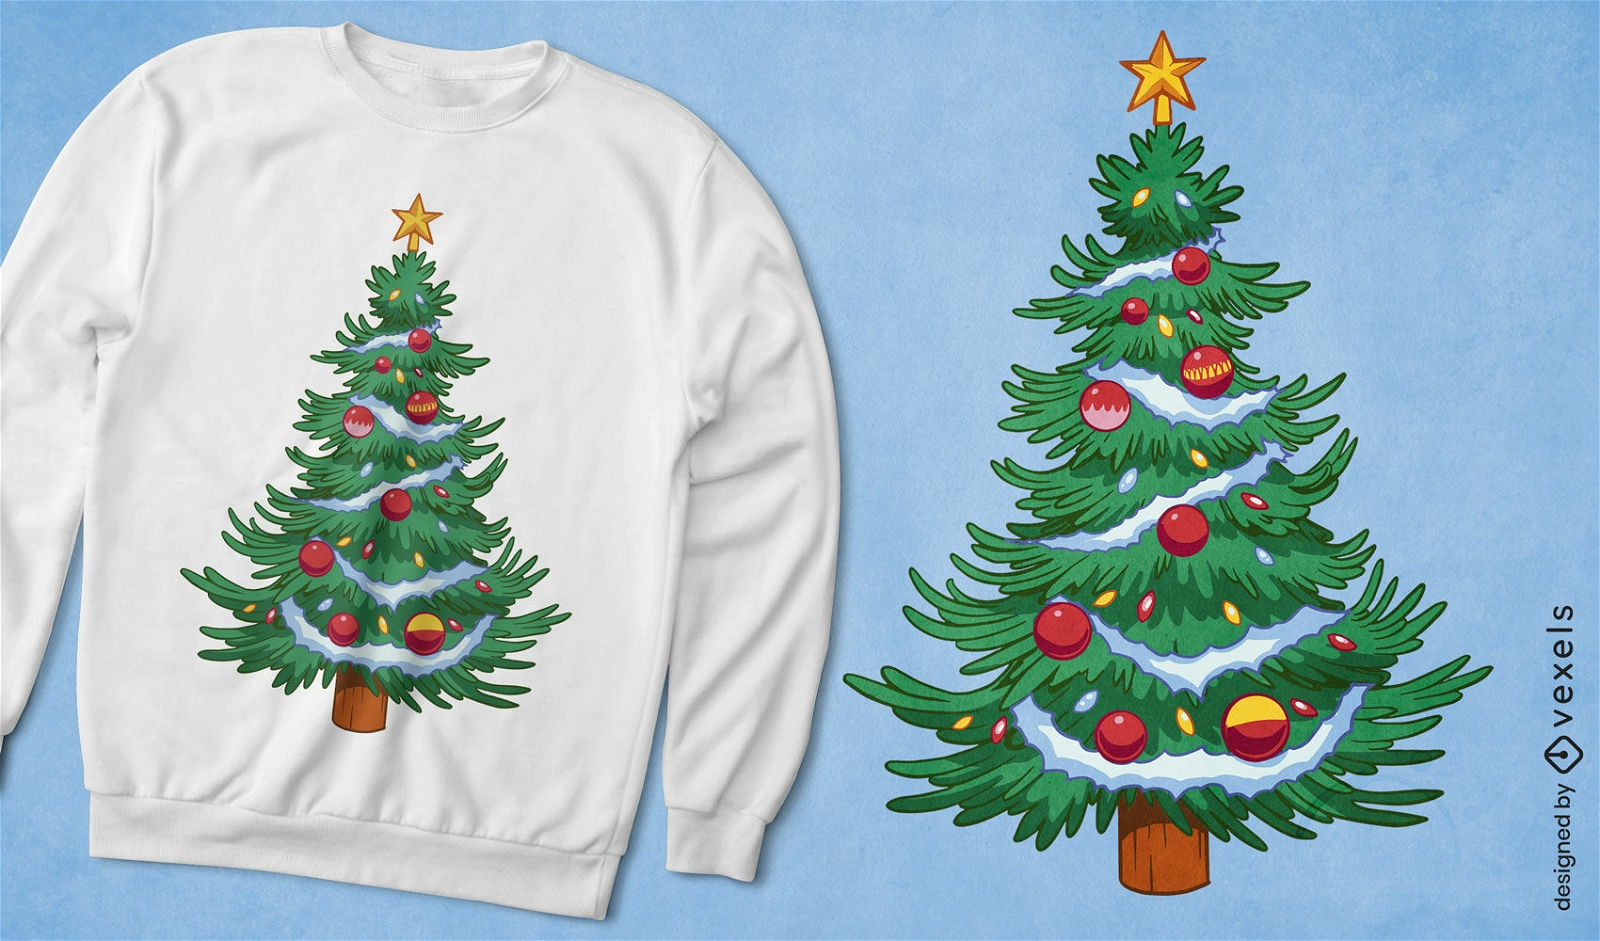 Diseño de camiseta de árbol de navidad decorado.